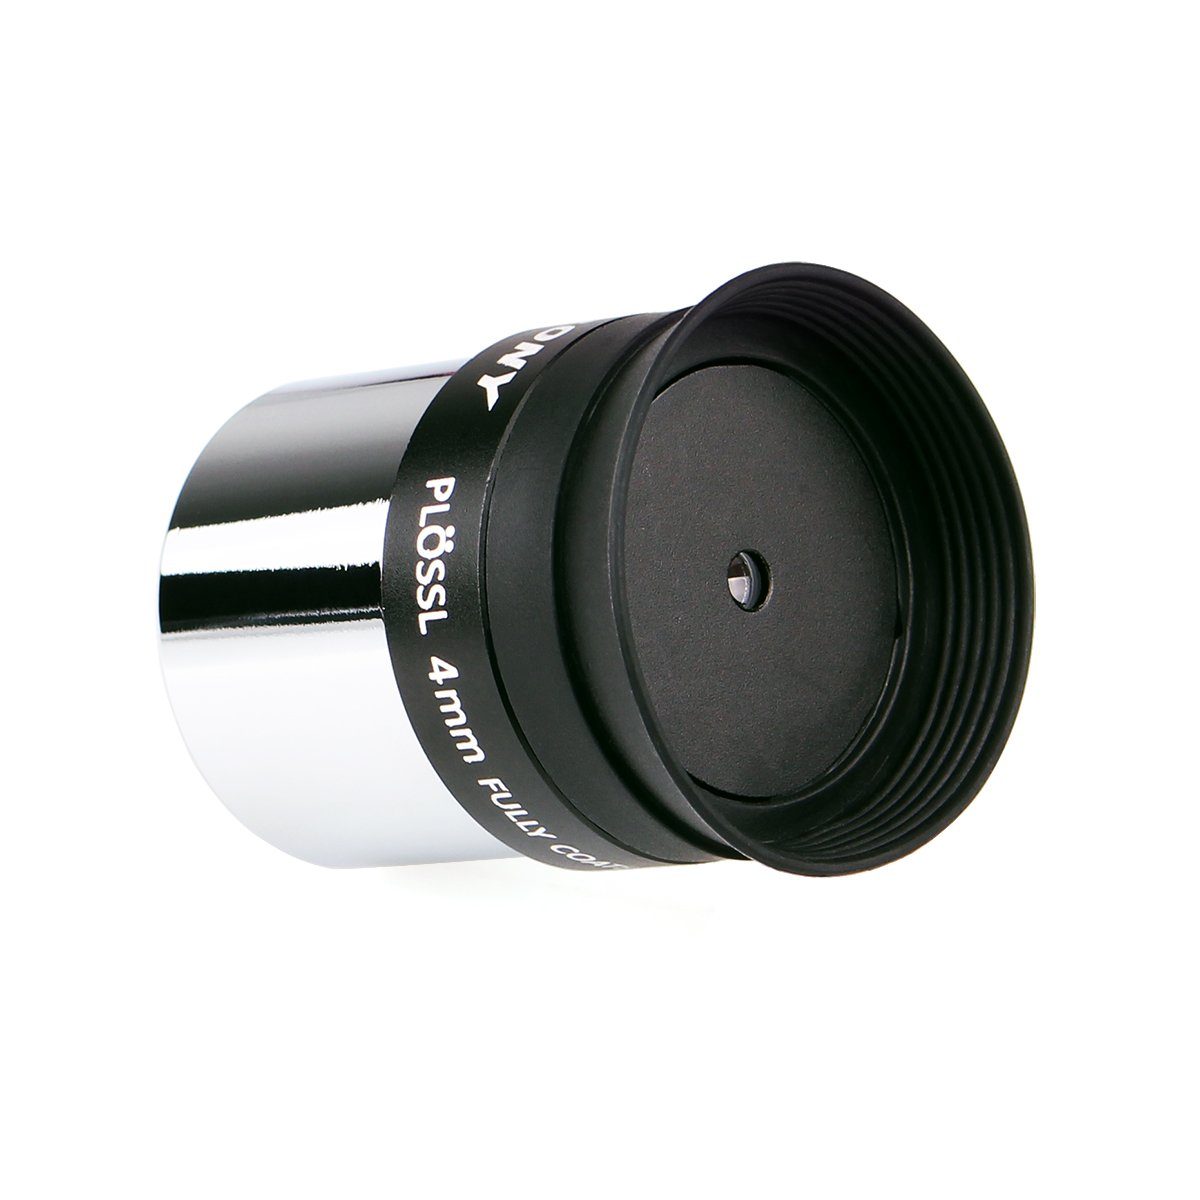 Svbony 1,25Okular 4mm Plossl Okular mit Filtergewinde für Teleskop 